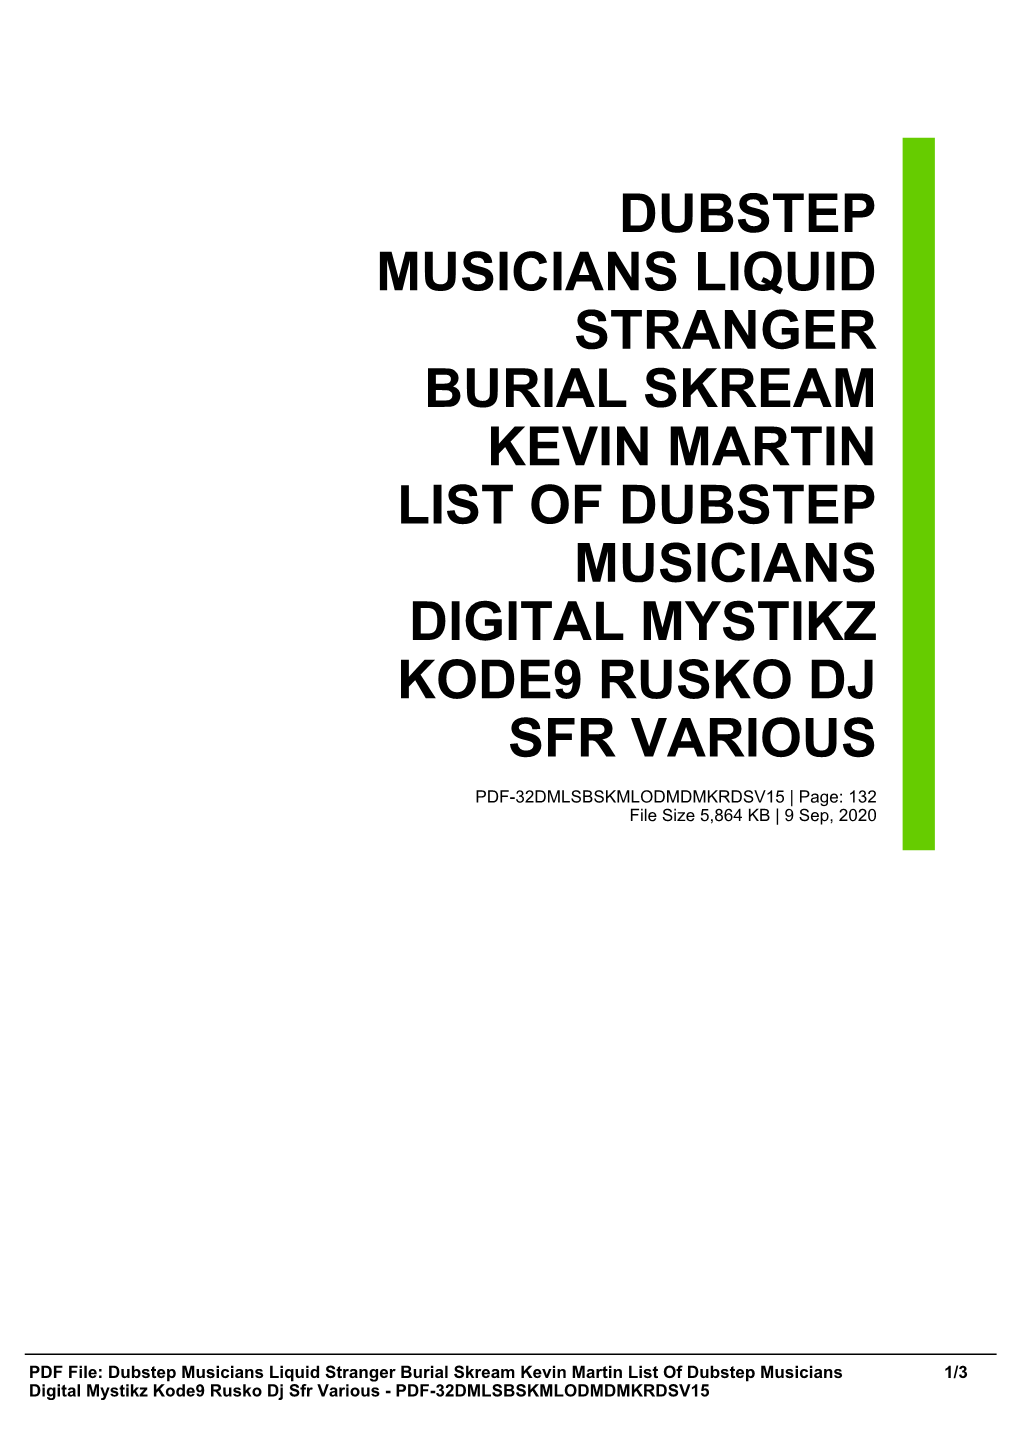 Dubstep Musicians Liquid Stranger Burial Skream Kevin Martin List of Dubstep Musicians Digital Mystikz Kode9 Rusko Dj Sfr Various